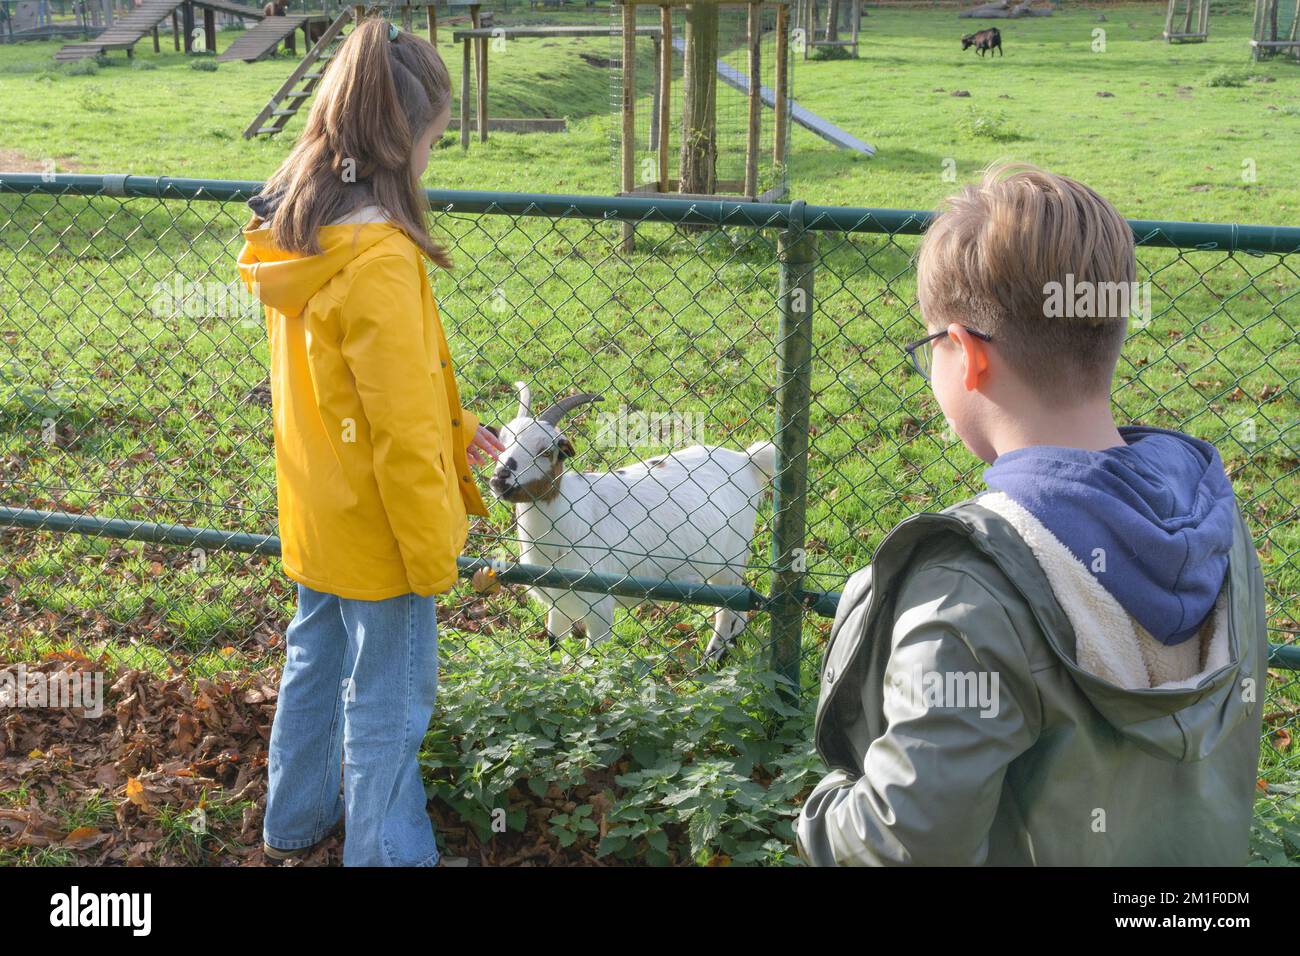 Bauernpark mit Haustieren, Kinder beobachten eine Ziege. Junge und Mädchen lernen Haustiere kennen. Stockfoto